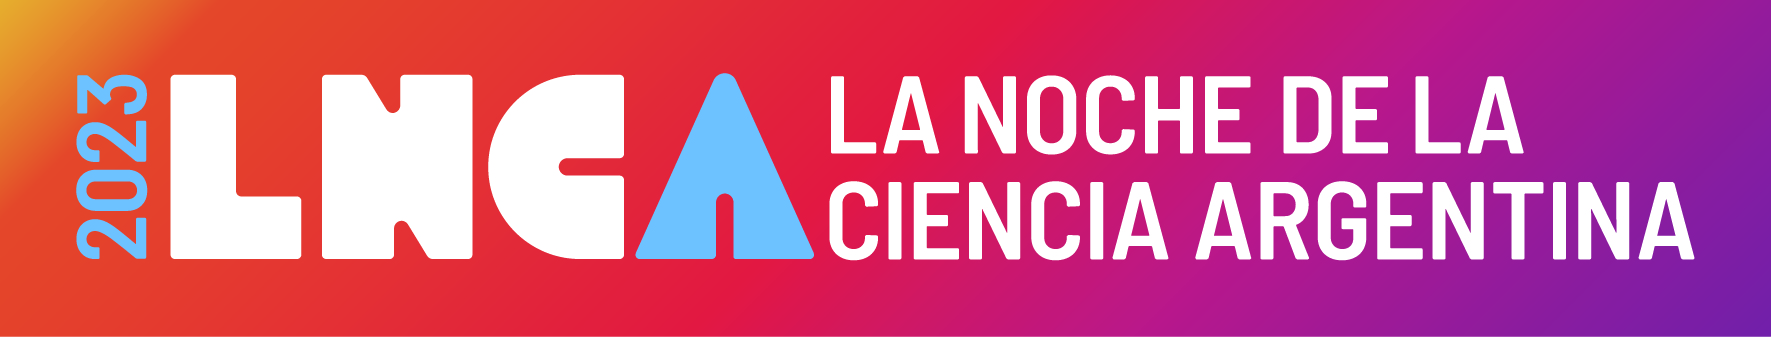 Viernes 3 de noviembre, de 19 a 24 h. La noche de la Ciencia Argentina